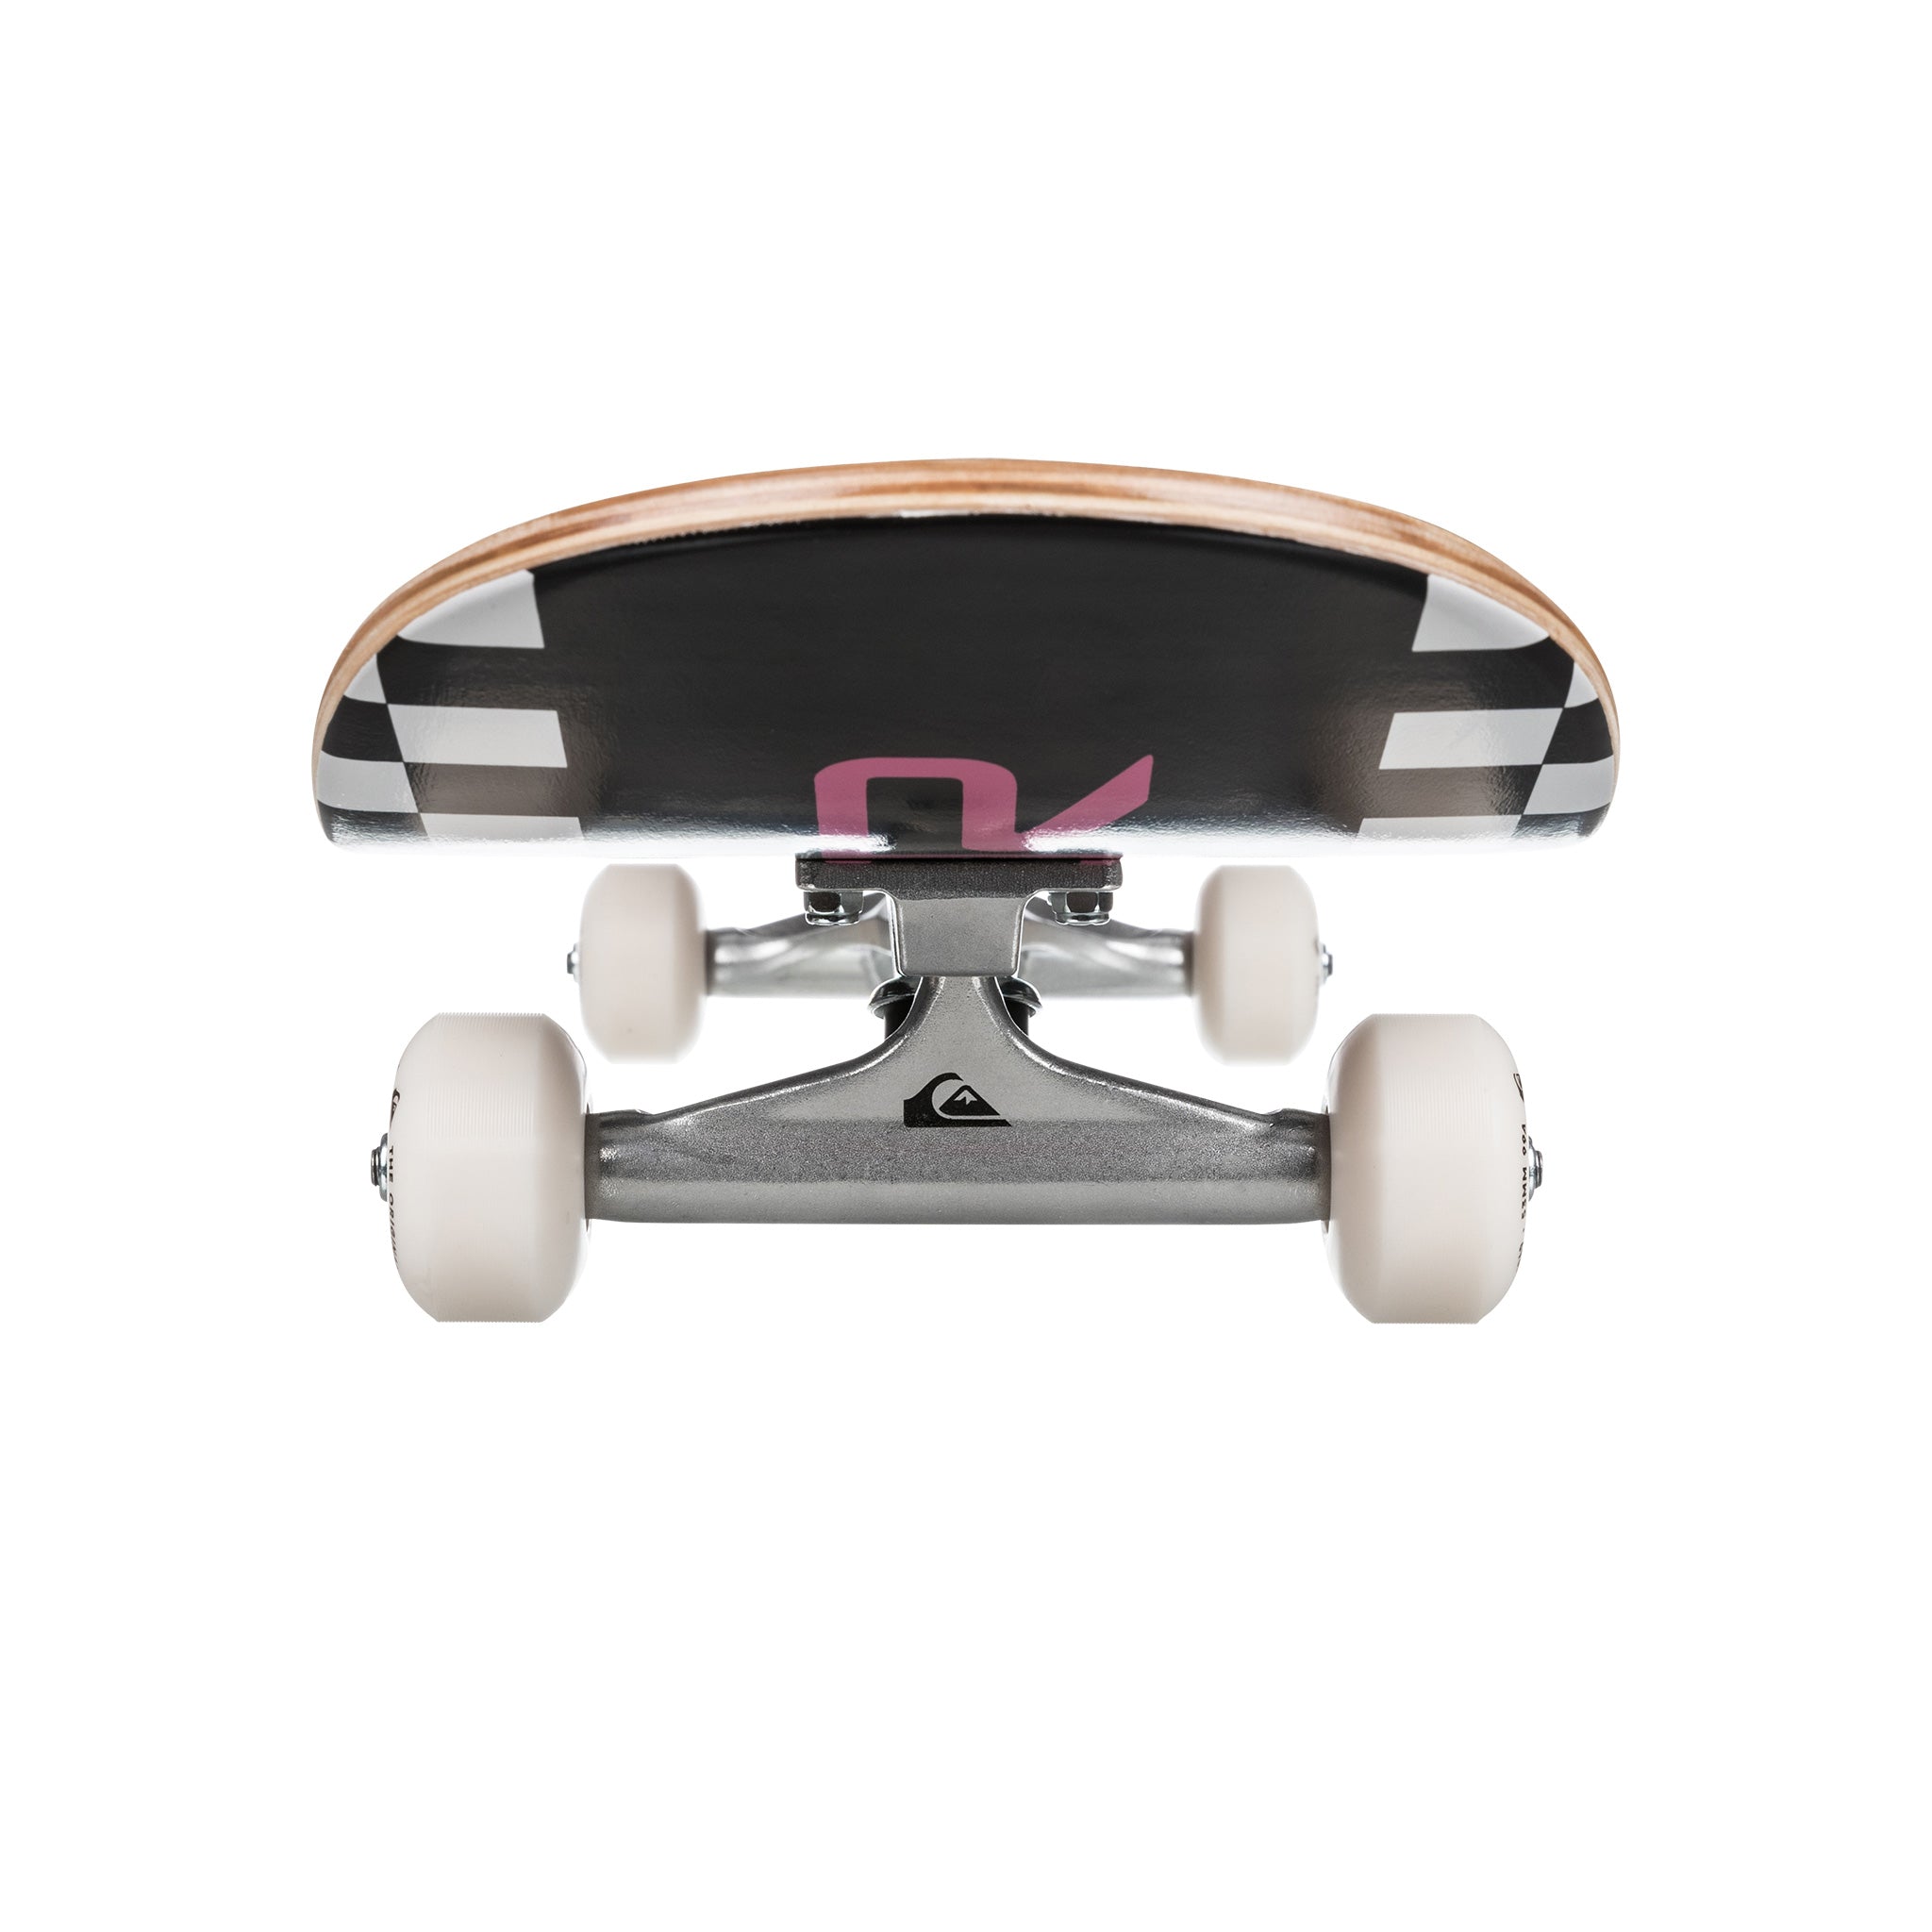 Quiksilver Skateboard Shred